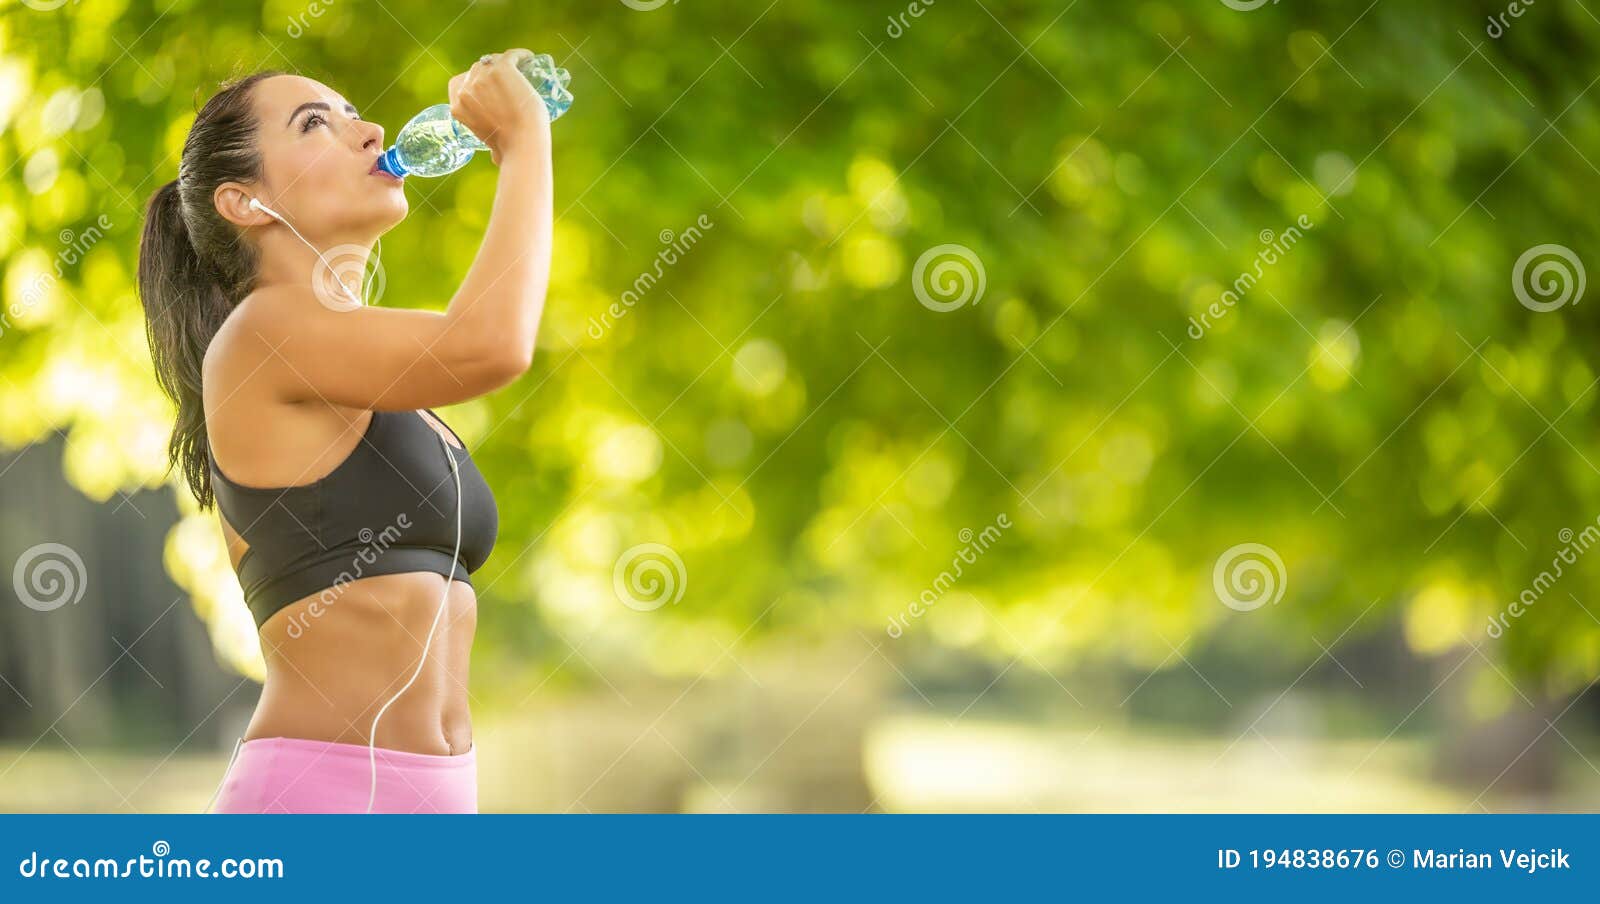 户外锻炼在海滩休息喝水的美丽健身运动员女人图片下载 - 觅知网